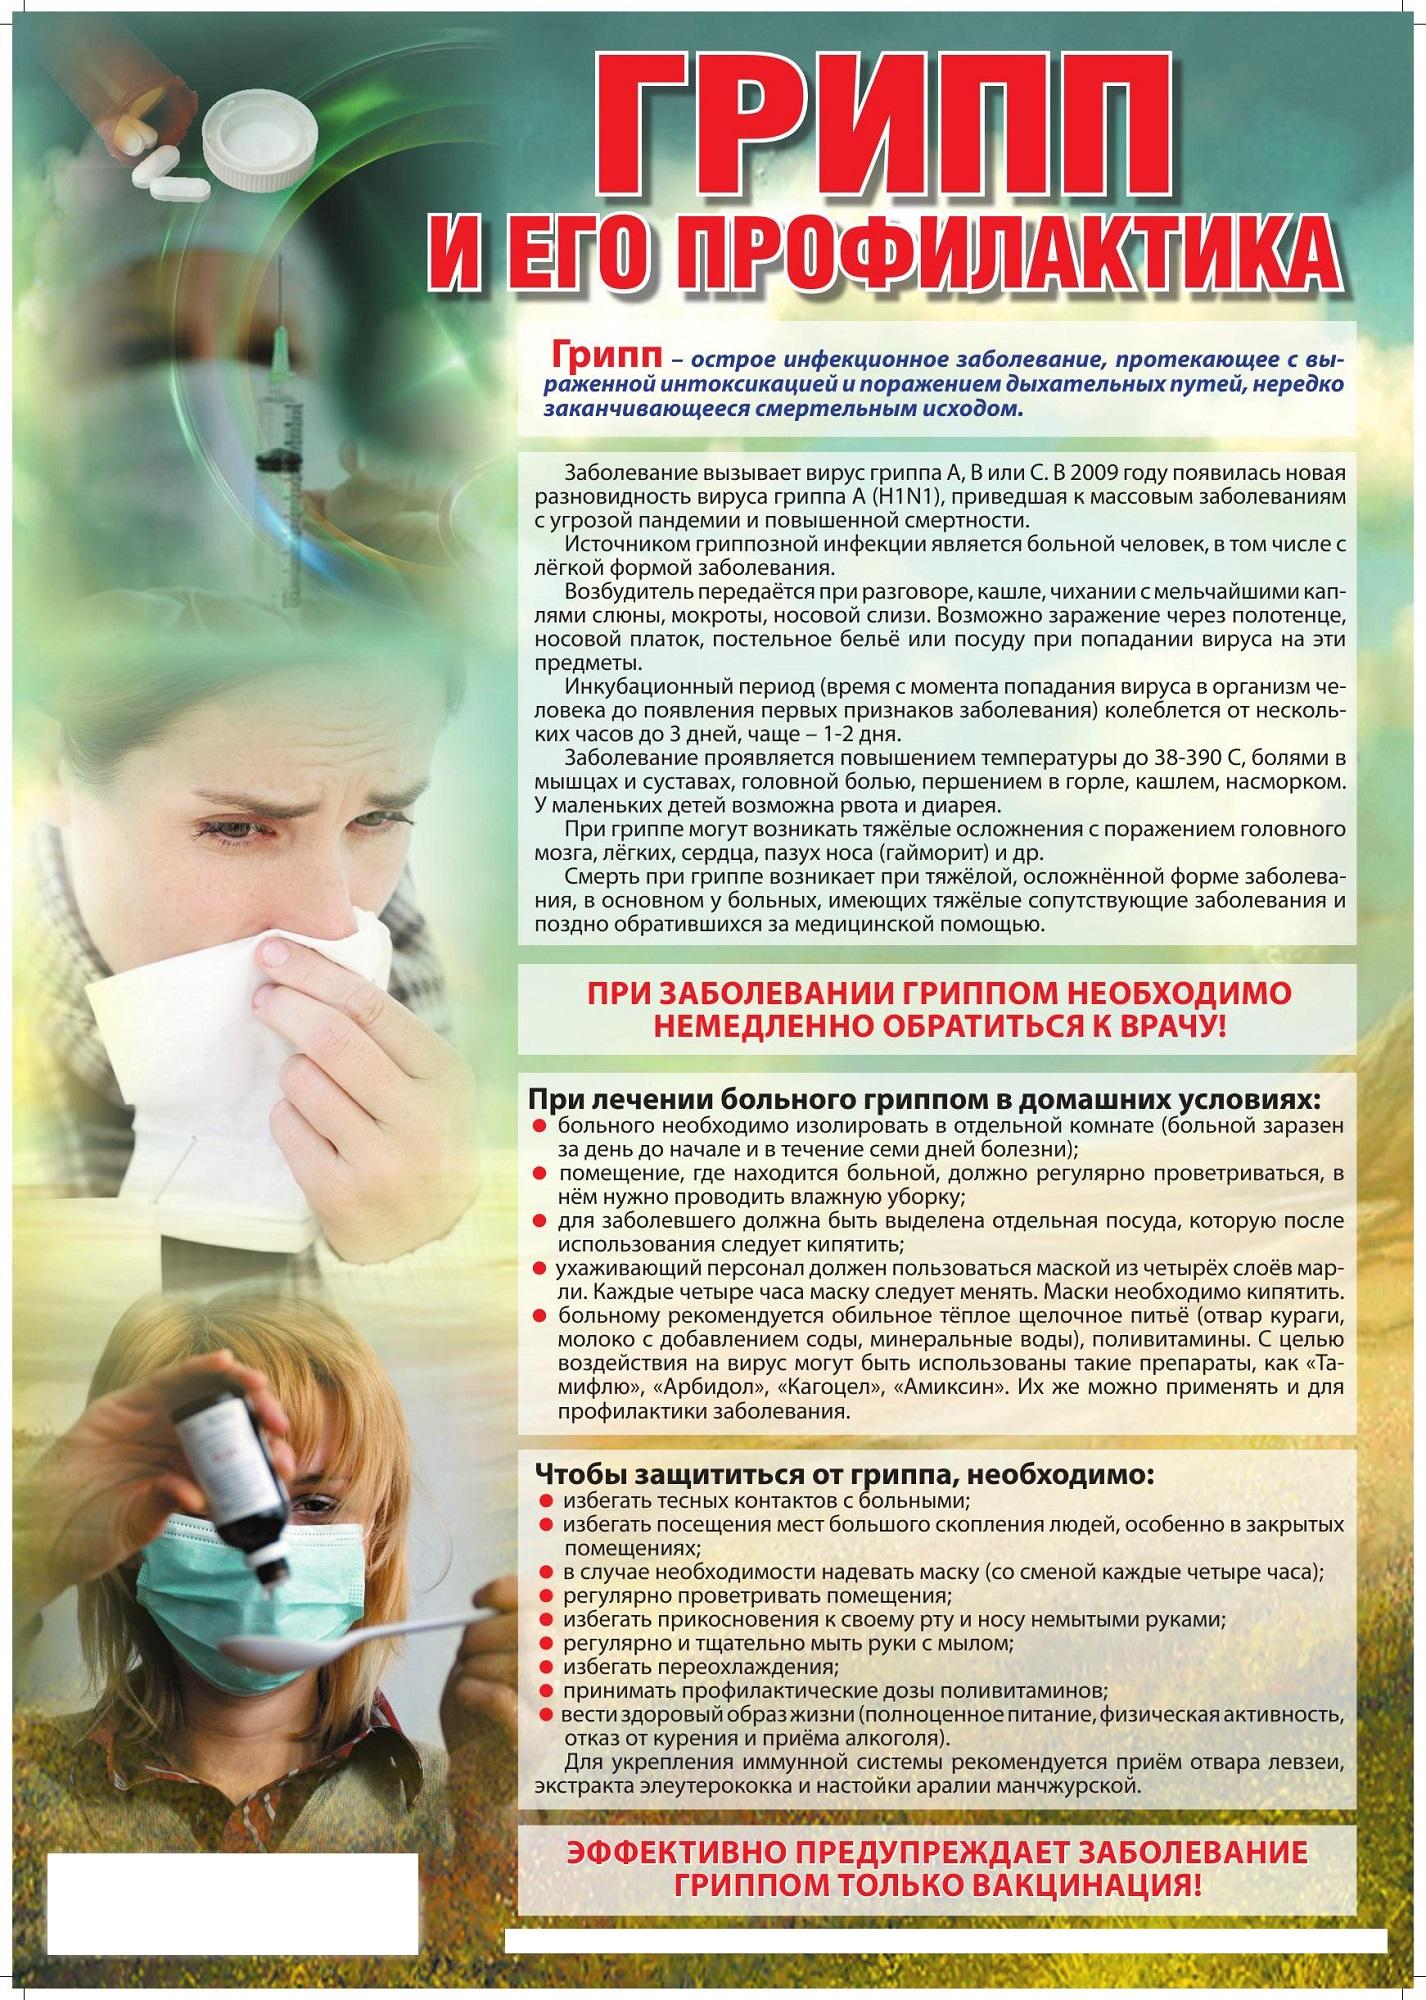 картинки о профилактики гриппа для школьников